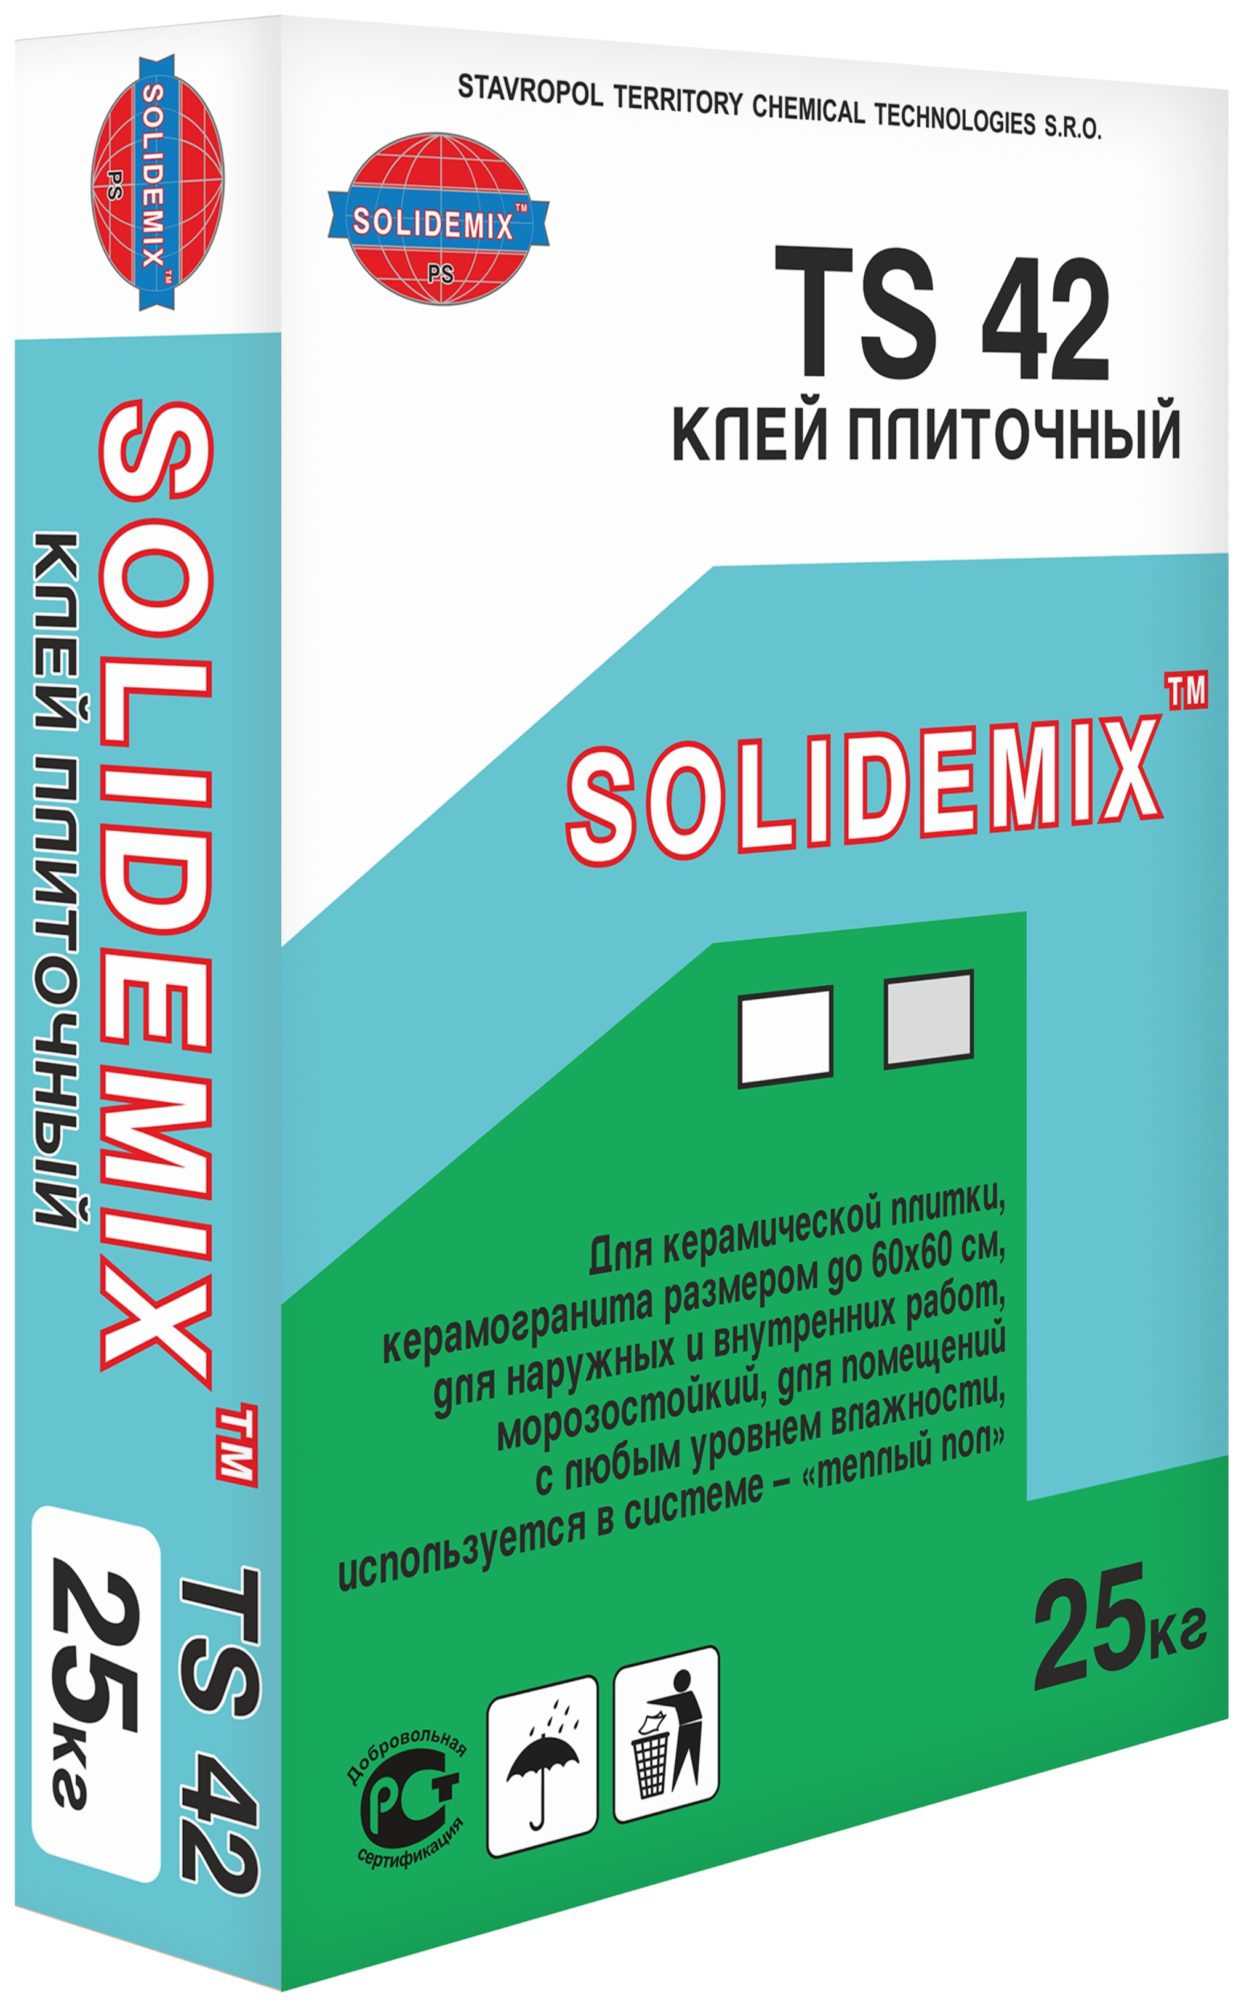 Купить Клей плиточный TS 42 от SOLIDEMIX